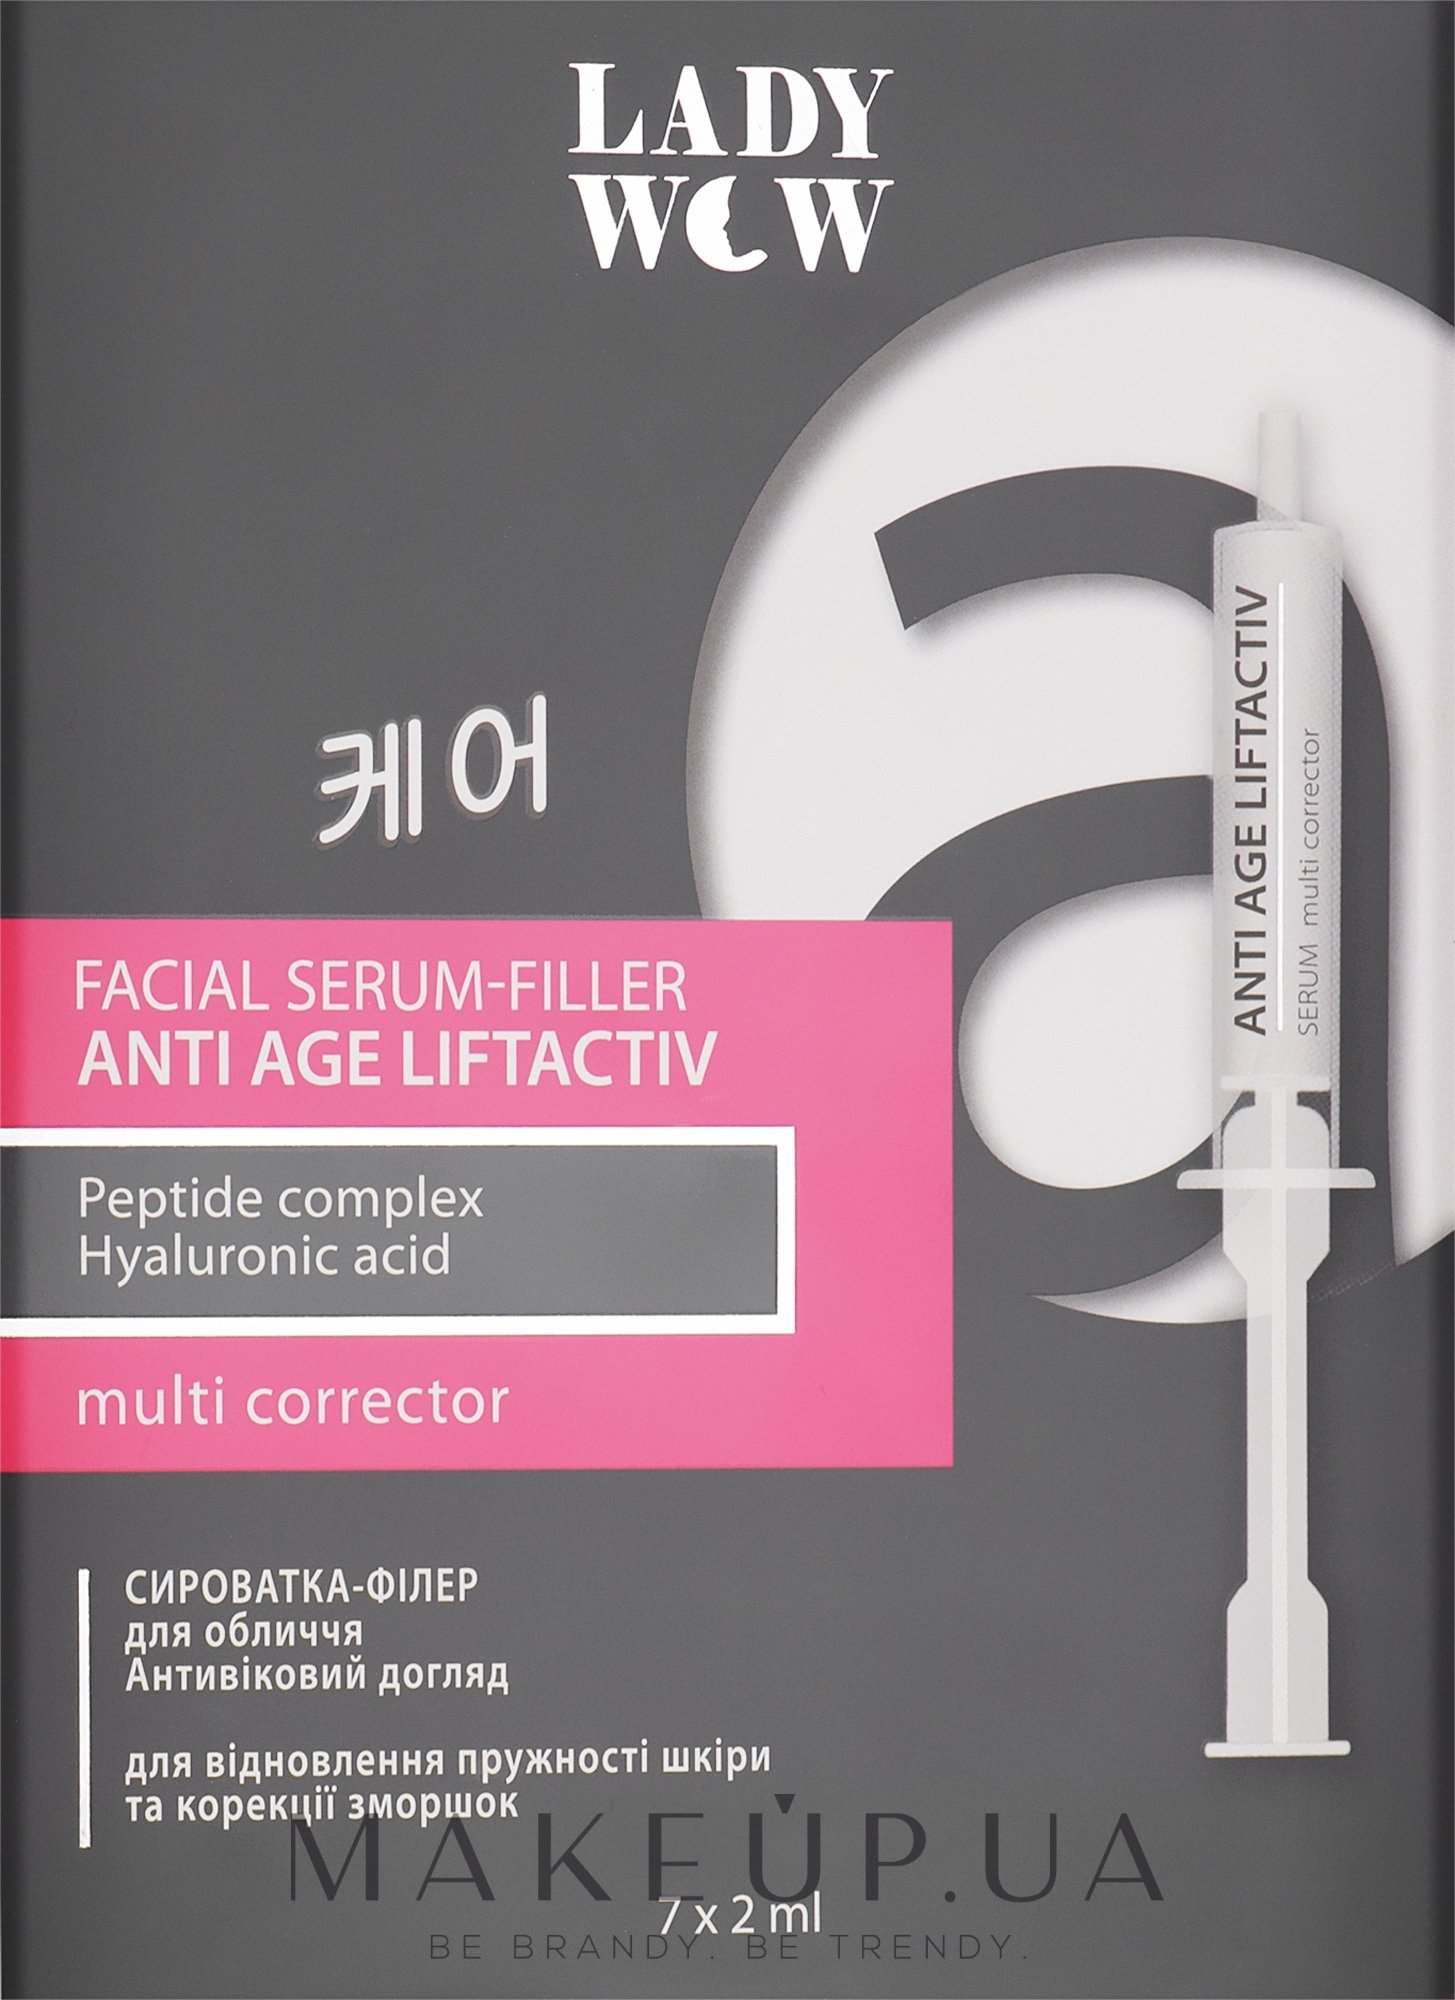 Сыворотка-филлер для лица - Lady Wow Anti Age Liftactiv Serum Set (мини) — фото 7x2ml